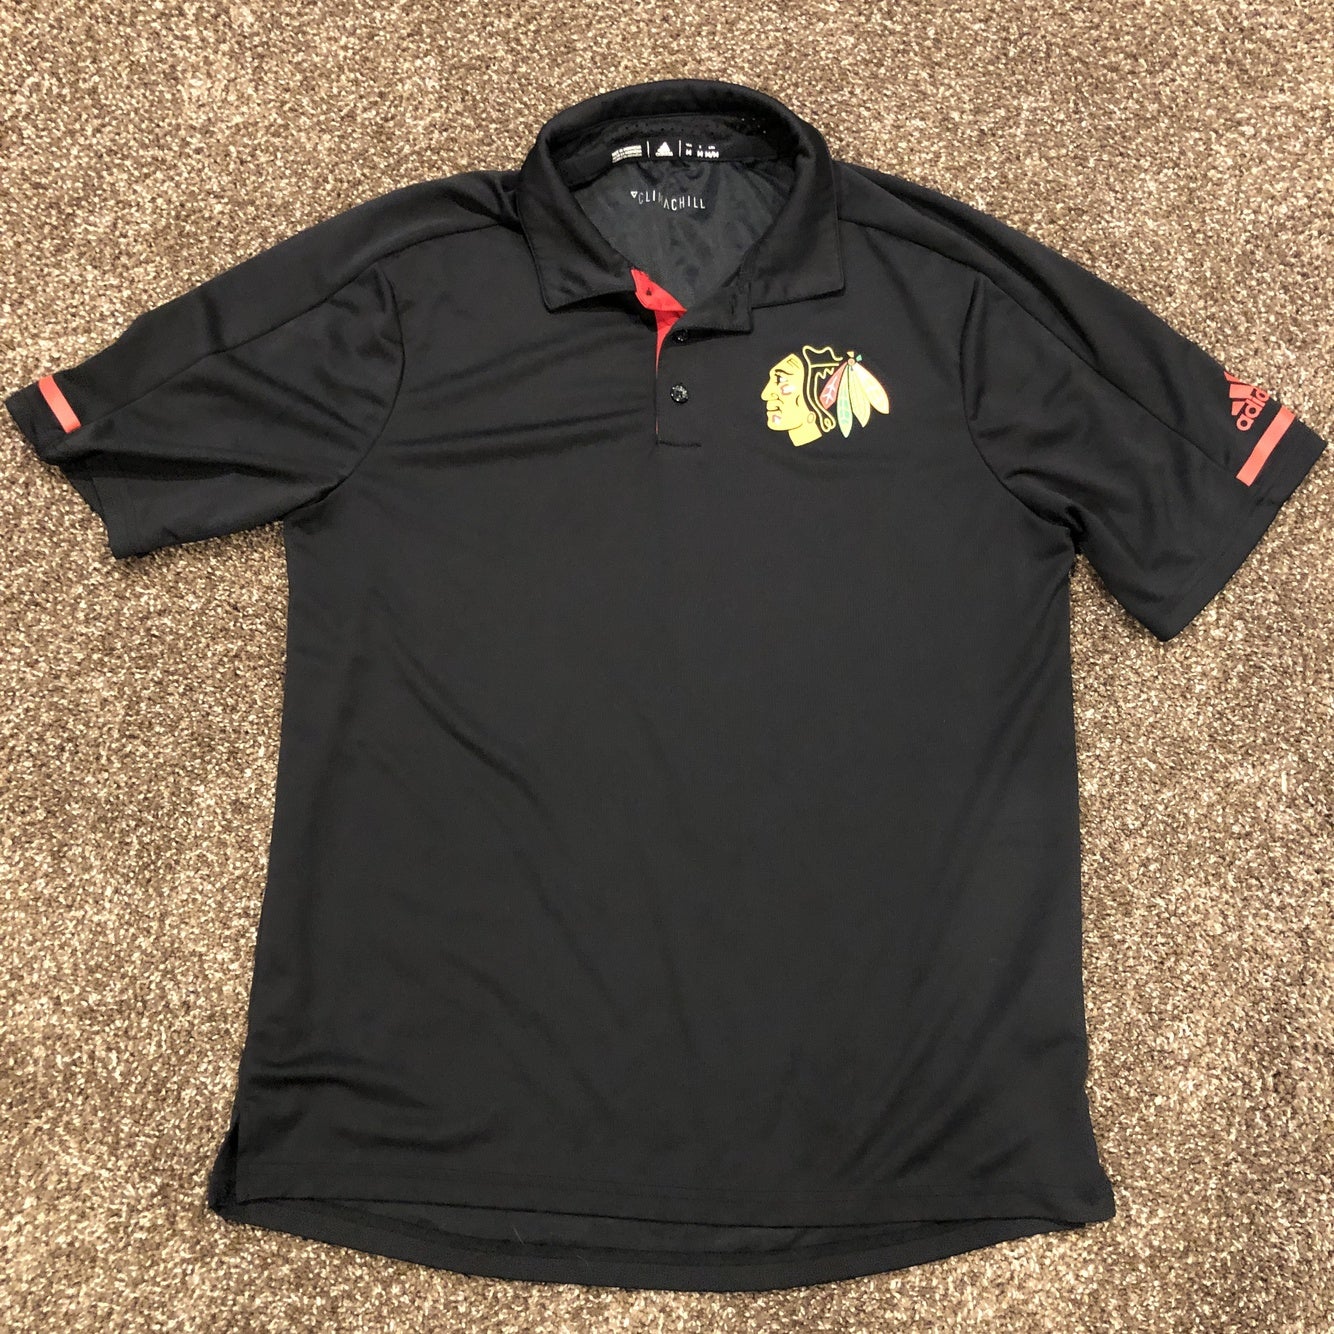 Nwot NHL Chicago Blackhawks Cancer Shirt Neon Size Medium